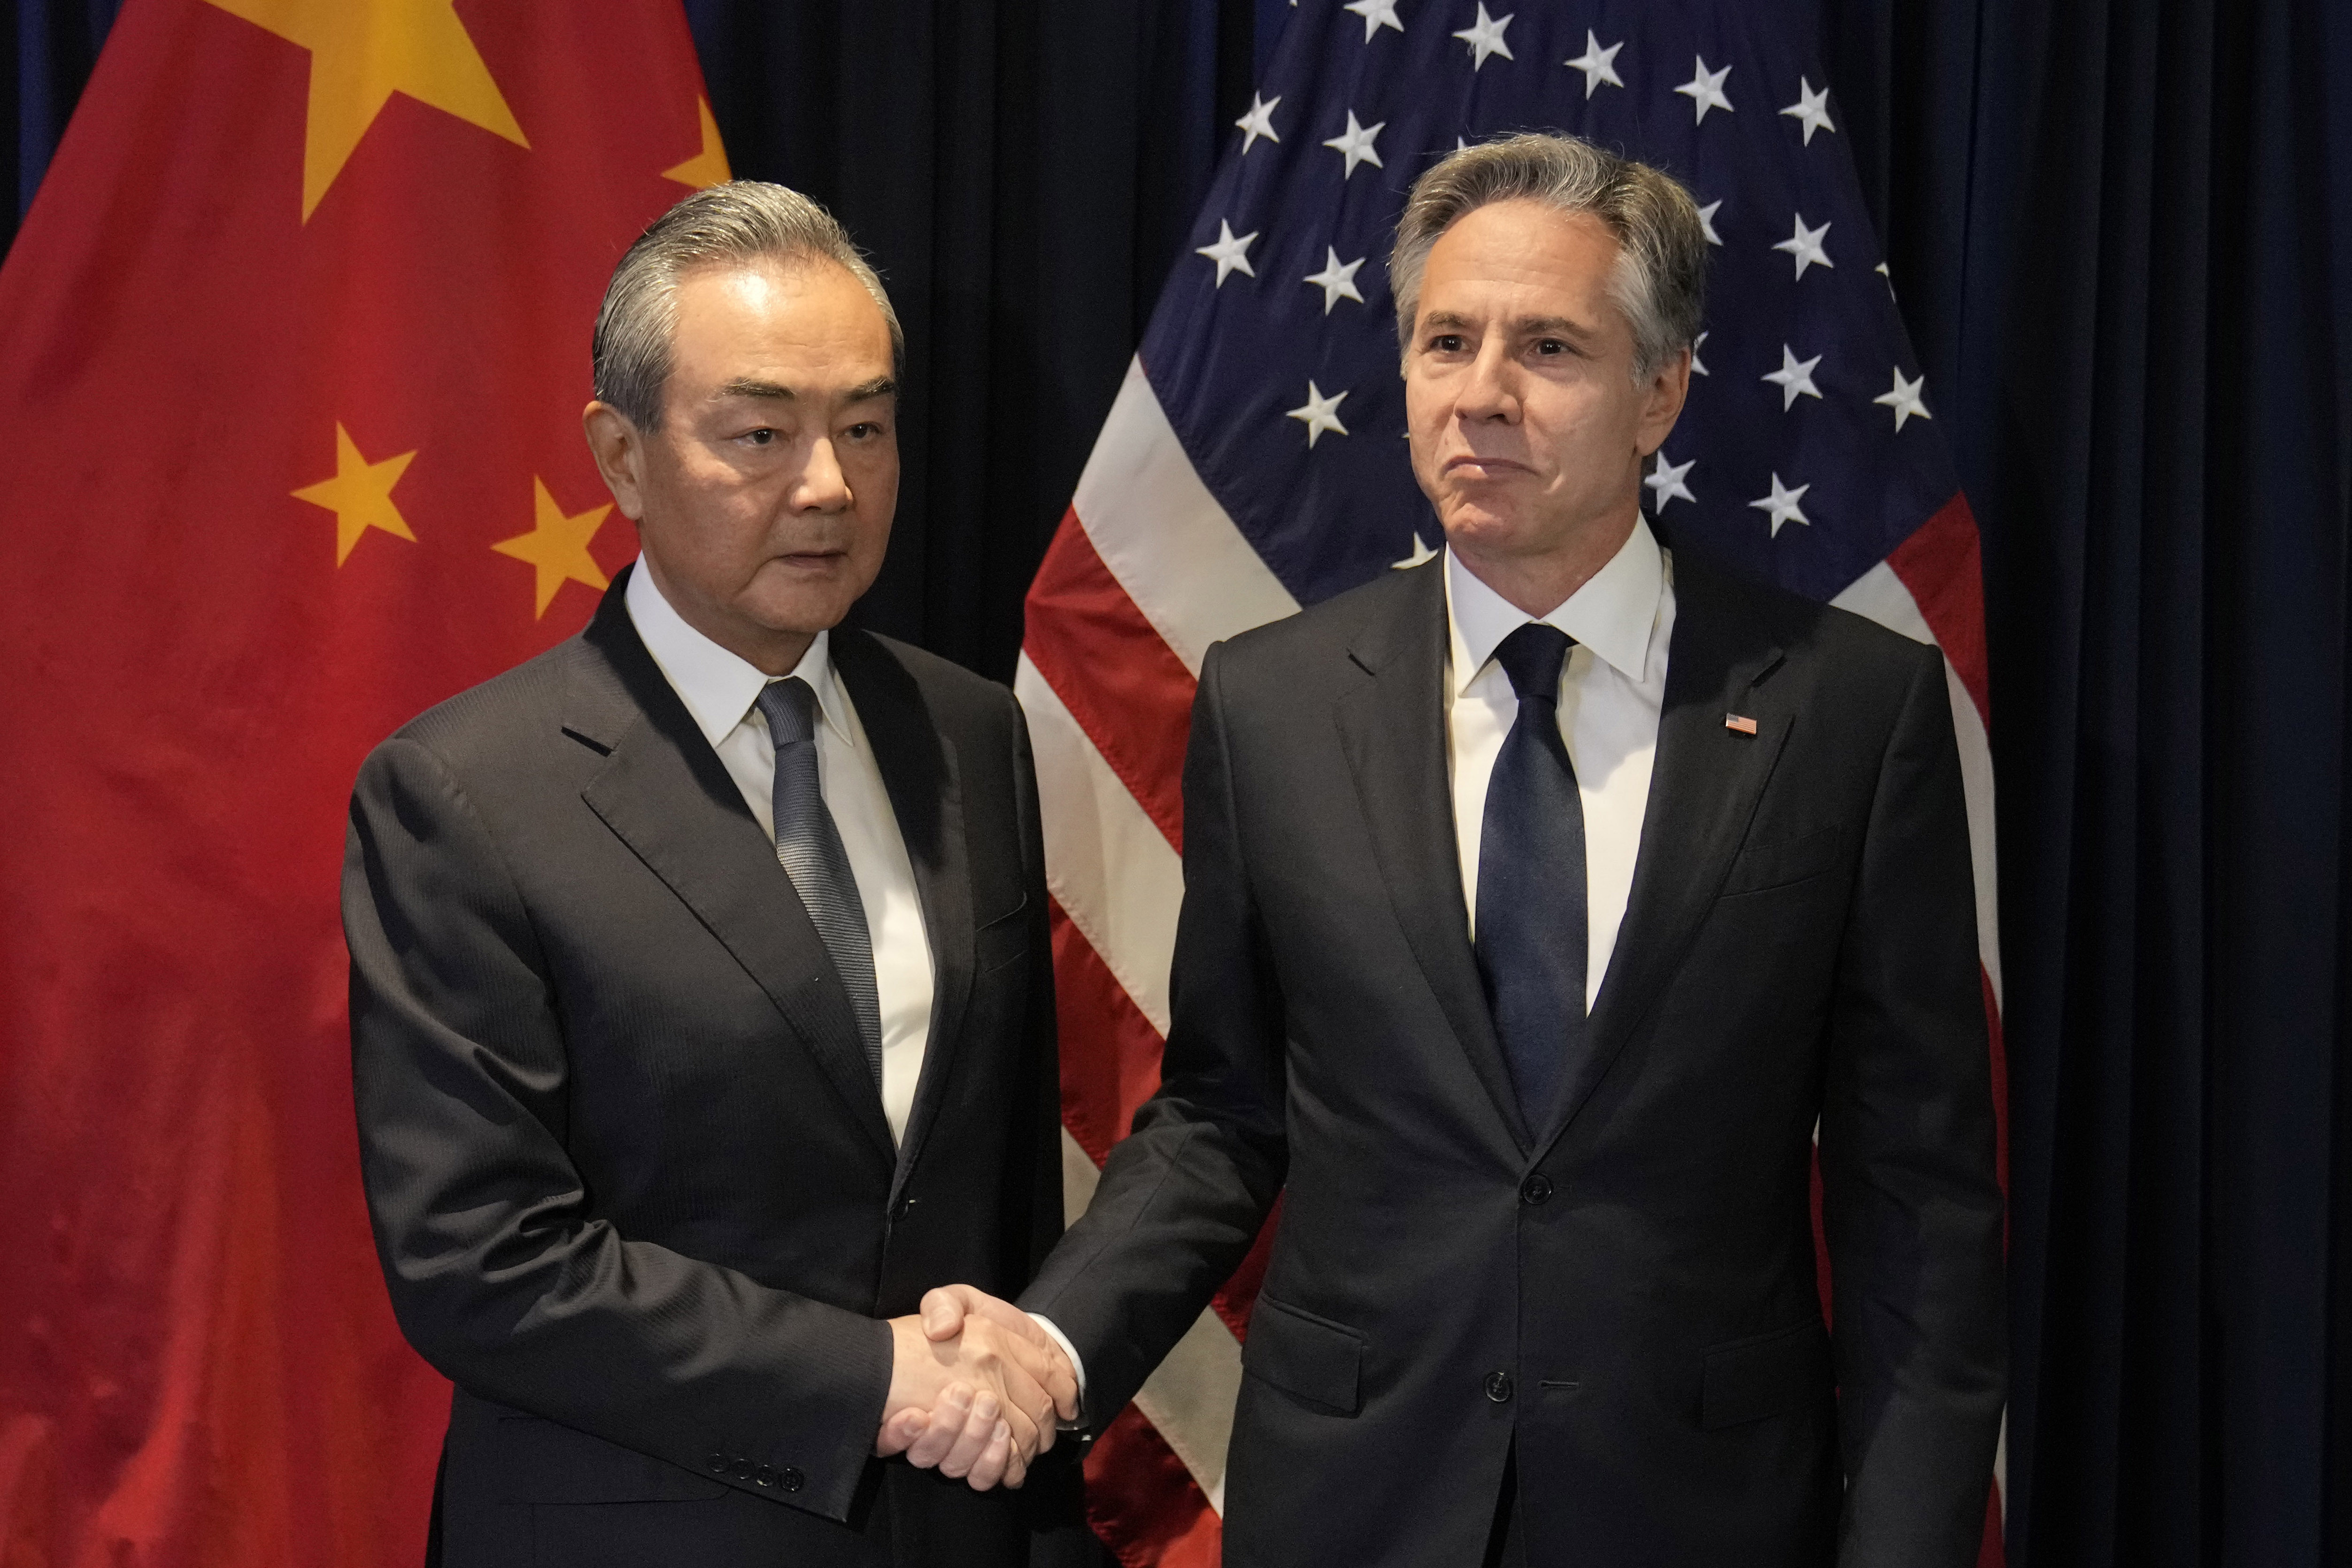 Blinken s-a întâlnit la Beijing cu ministrul chinez de Externe. Factorii "negativi" se acumulează în relaţiile dintre SUA şi China, afirmă Wang Yi